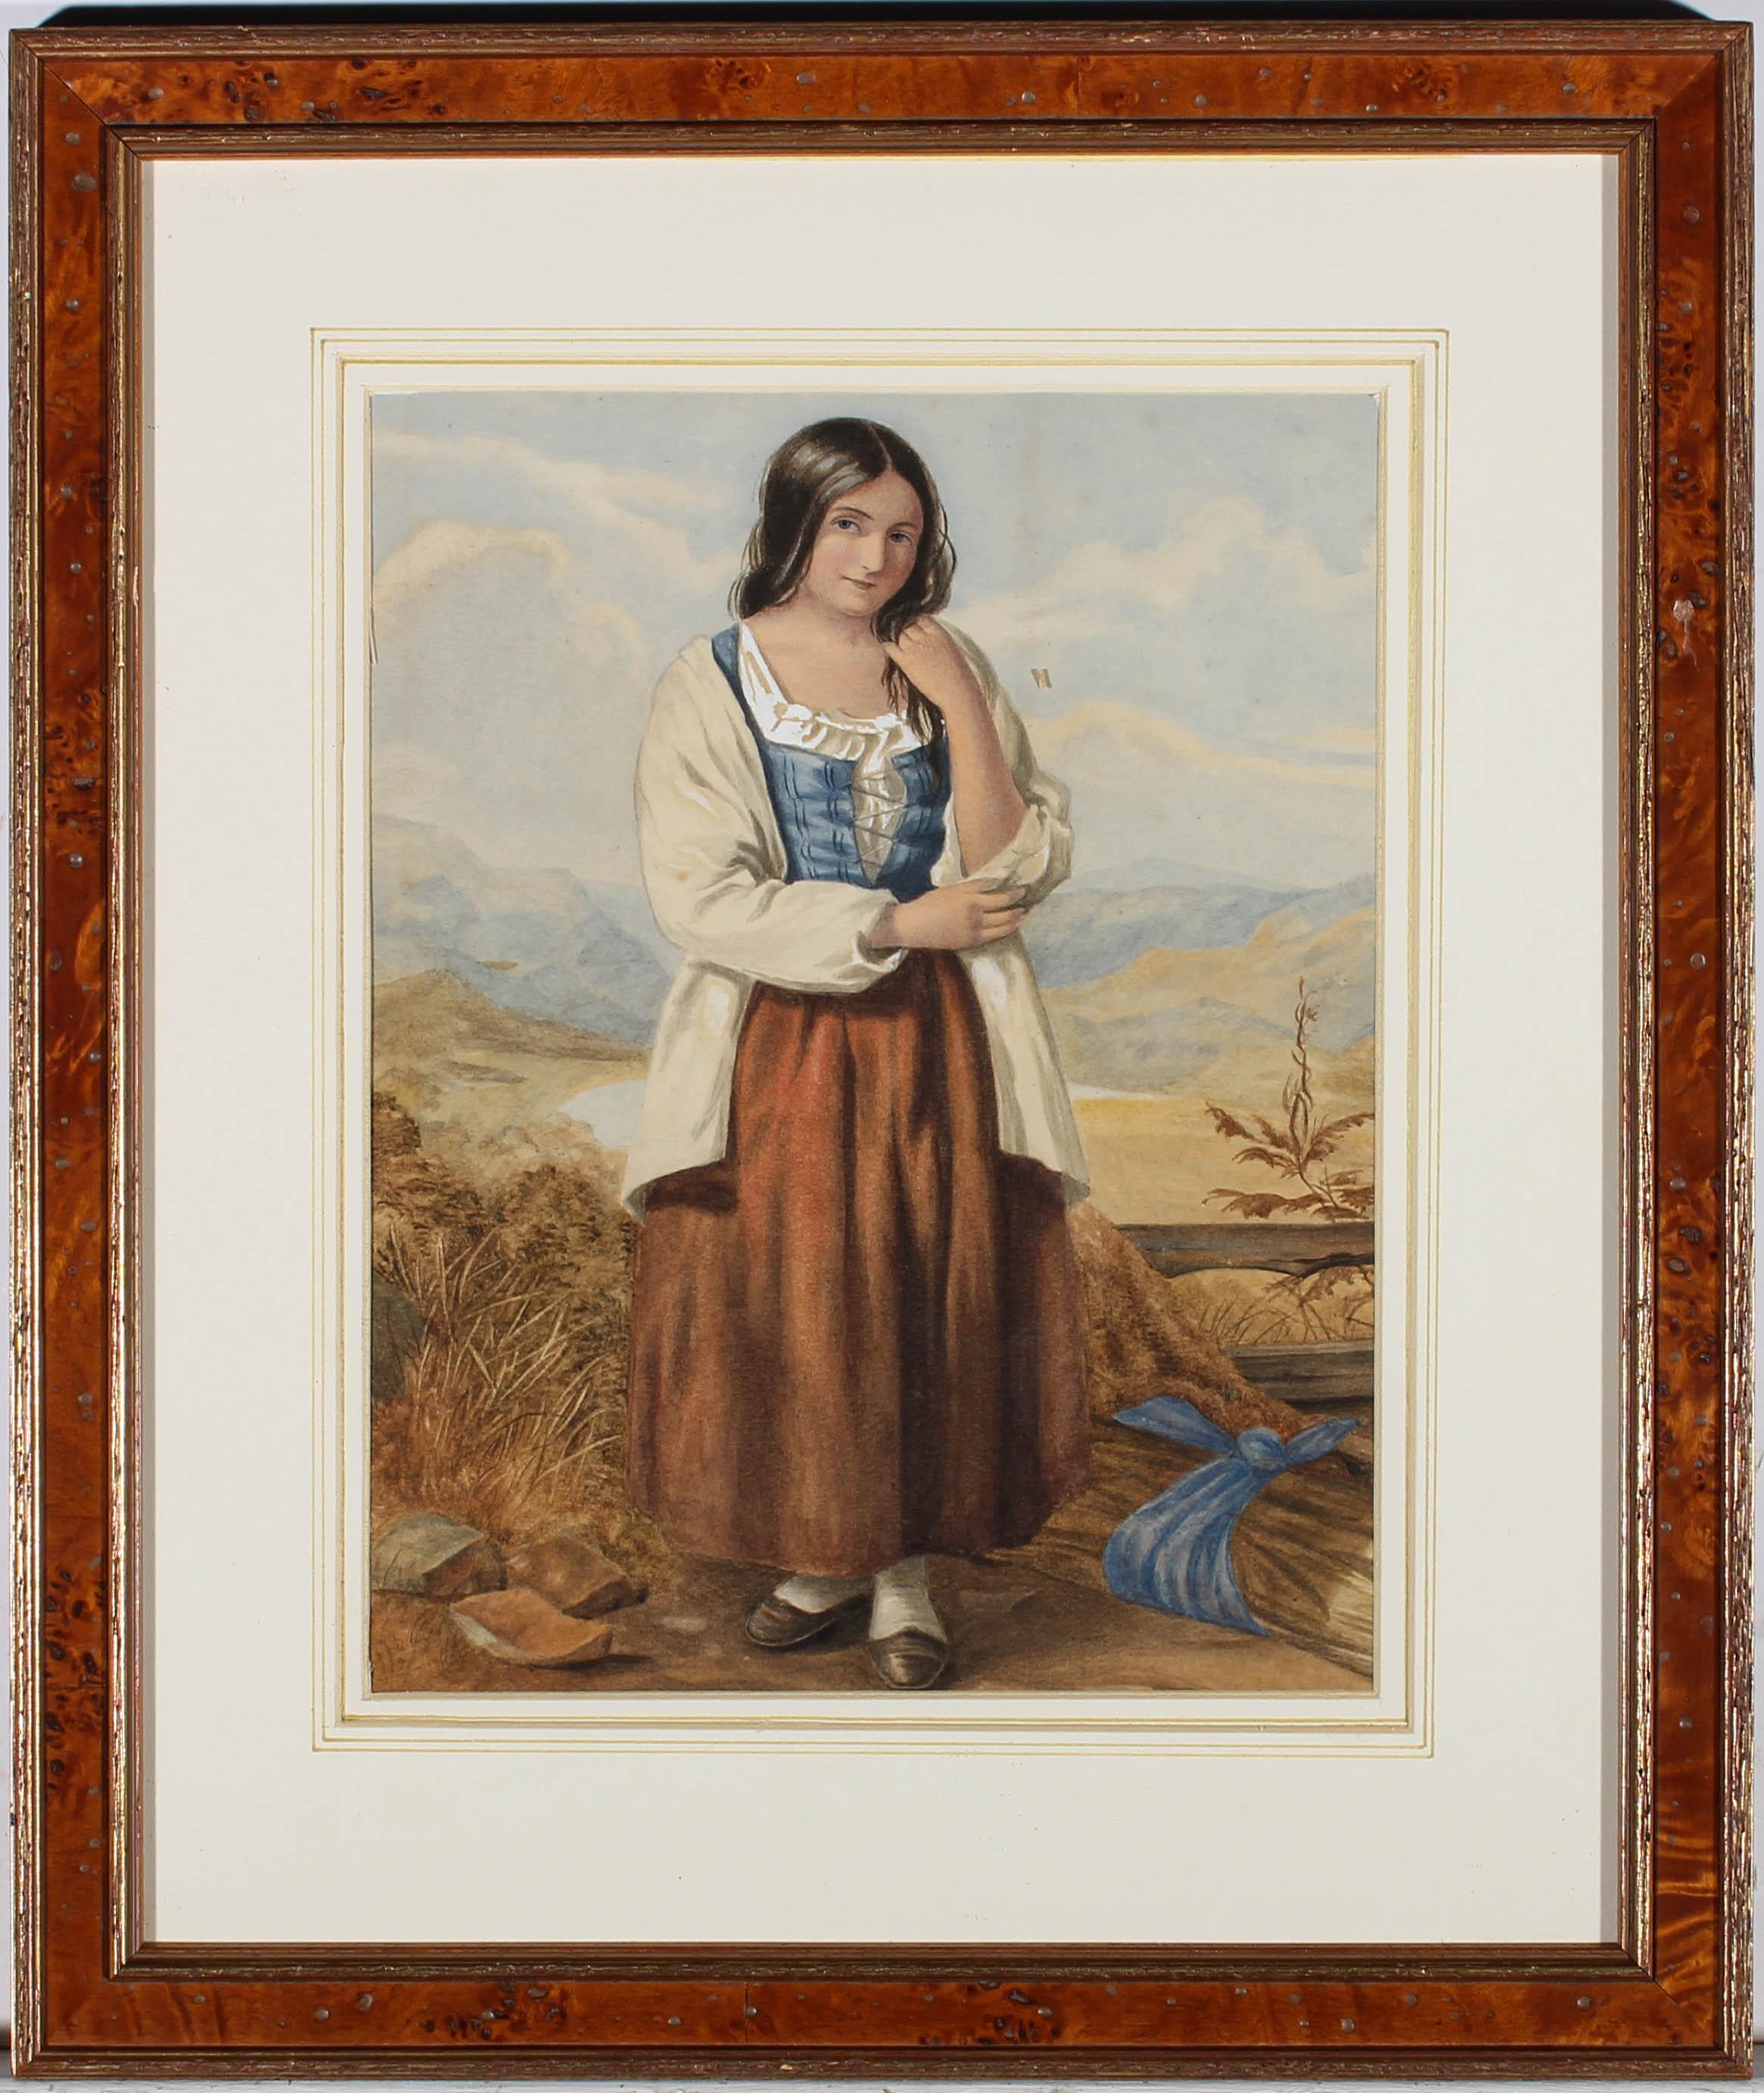 Ein schönes Aquarell der englischen Schule aus der Mitte des 19. Jahrhunderts, das ein Bauernmädchen beim Mais sammeln zeigt. Das junge Mädchen trägt einen bodenlangen Rock, ein blaues Korsett und ein übergroßes weißes Hemd. Das Gemälde ist in einem